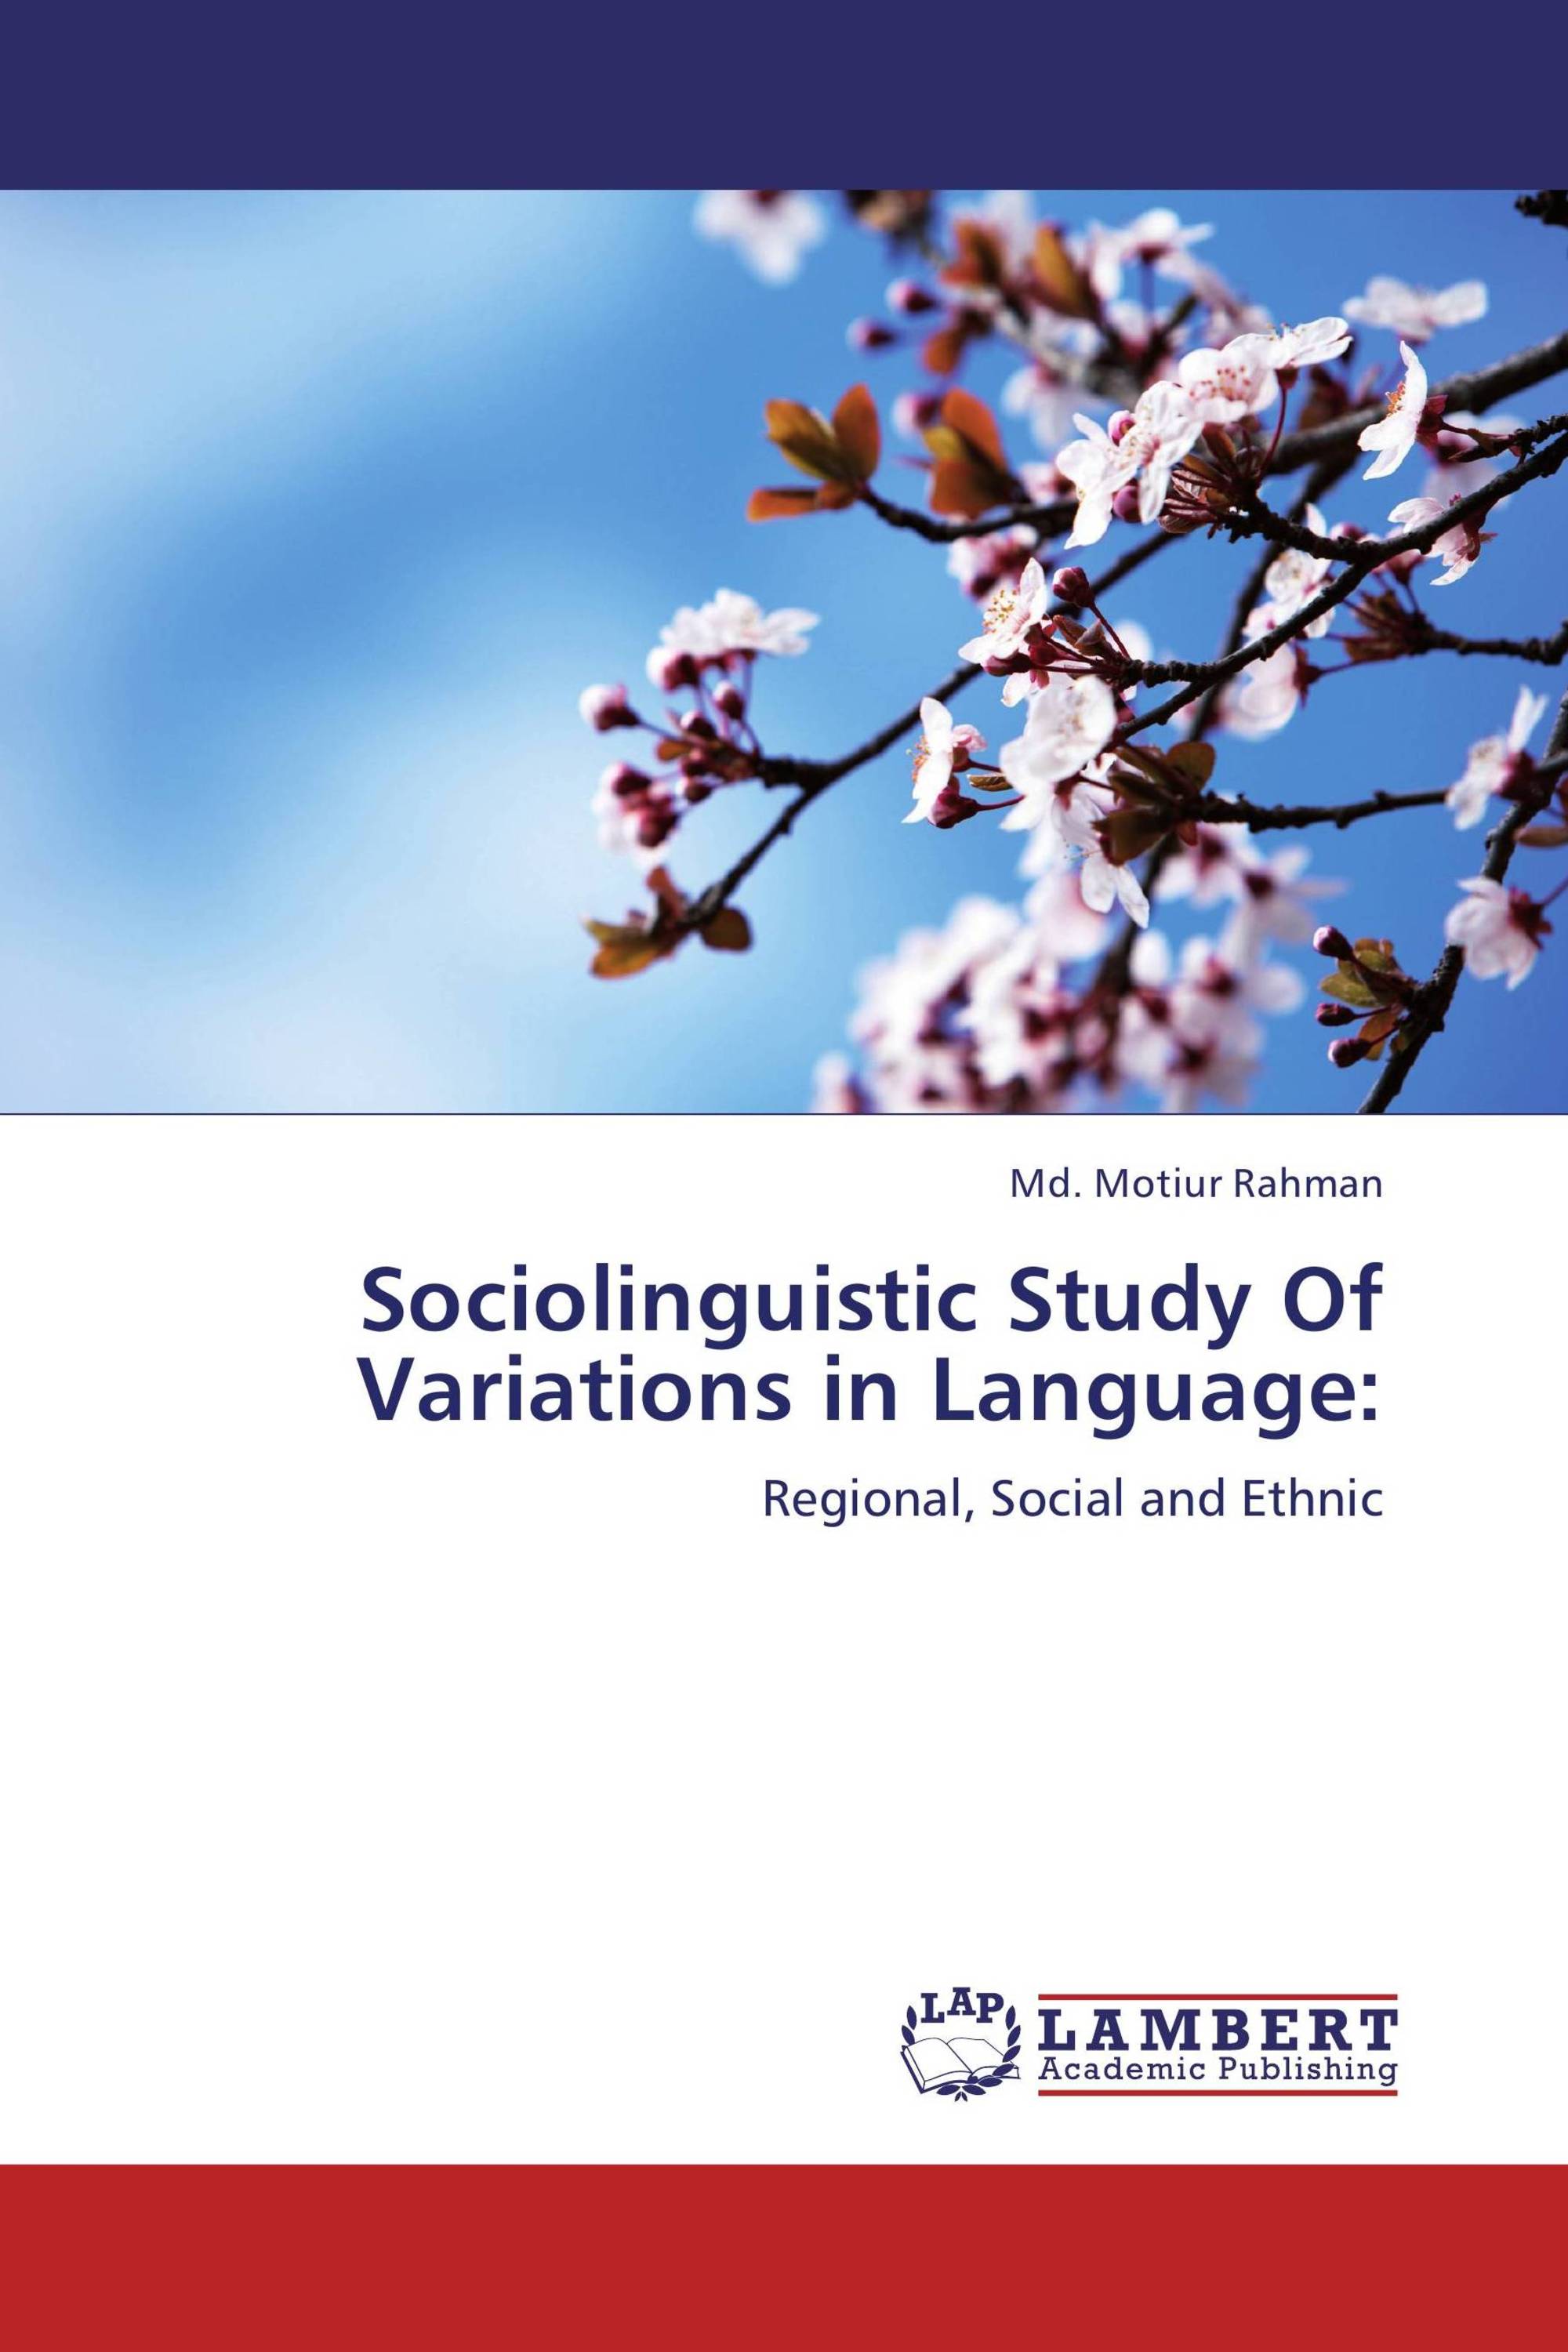 dissertation sociolinguistics